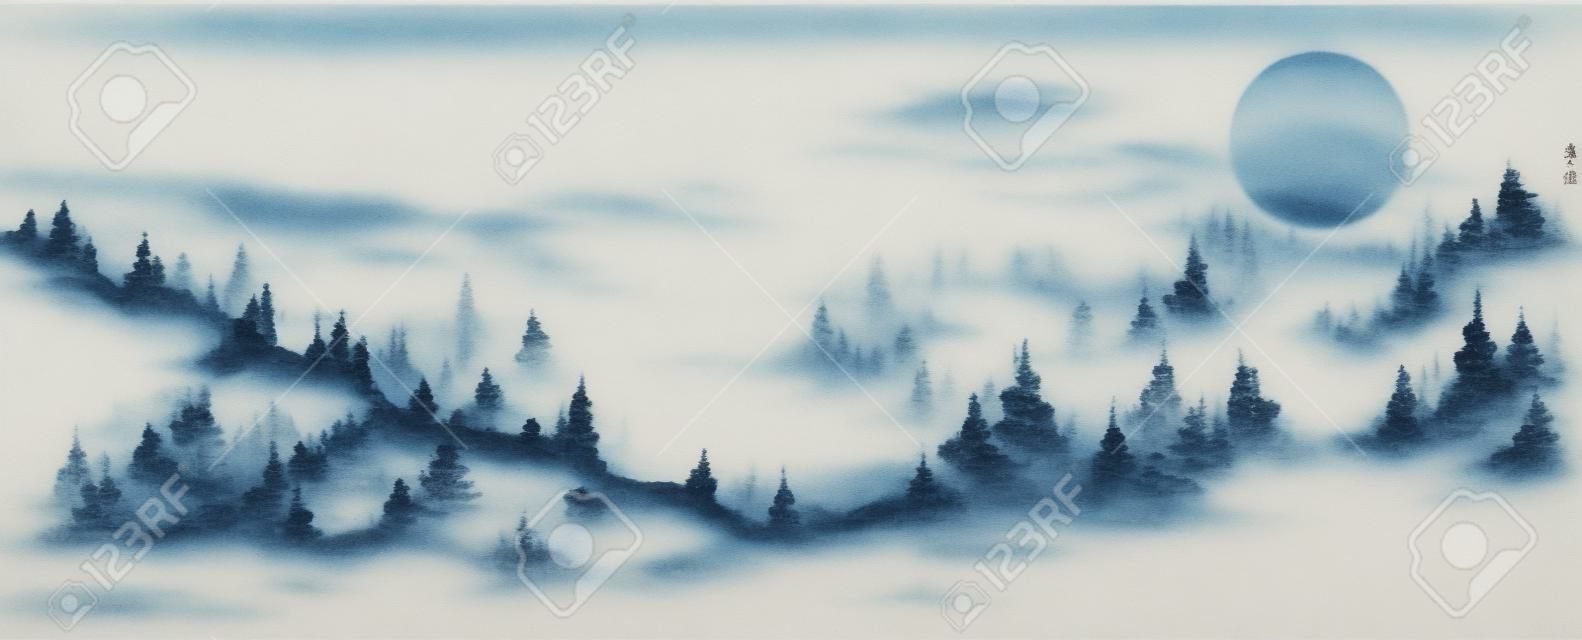 Paesaggio delle montagne della foresta nebbiosa. tradizionale pittura a inchiostro orientale sumi-e, u-sin, go-hua